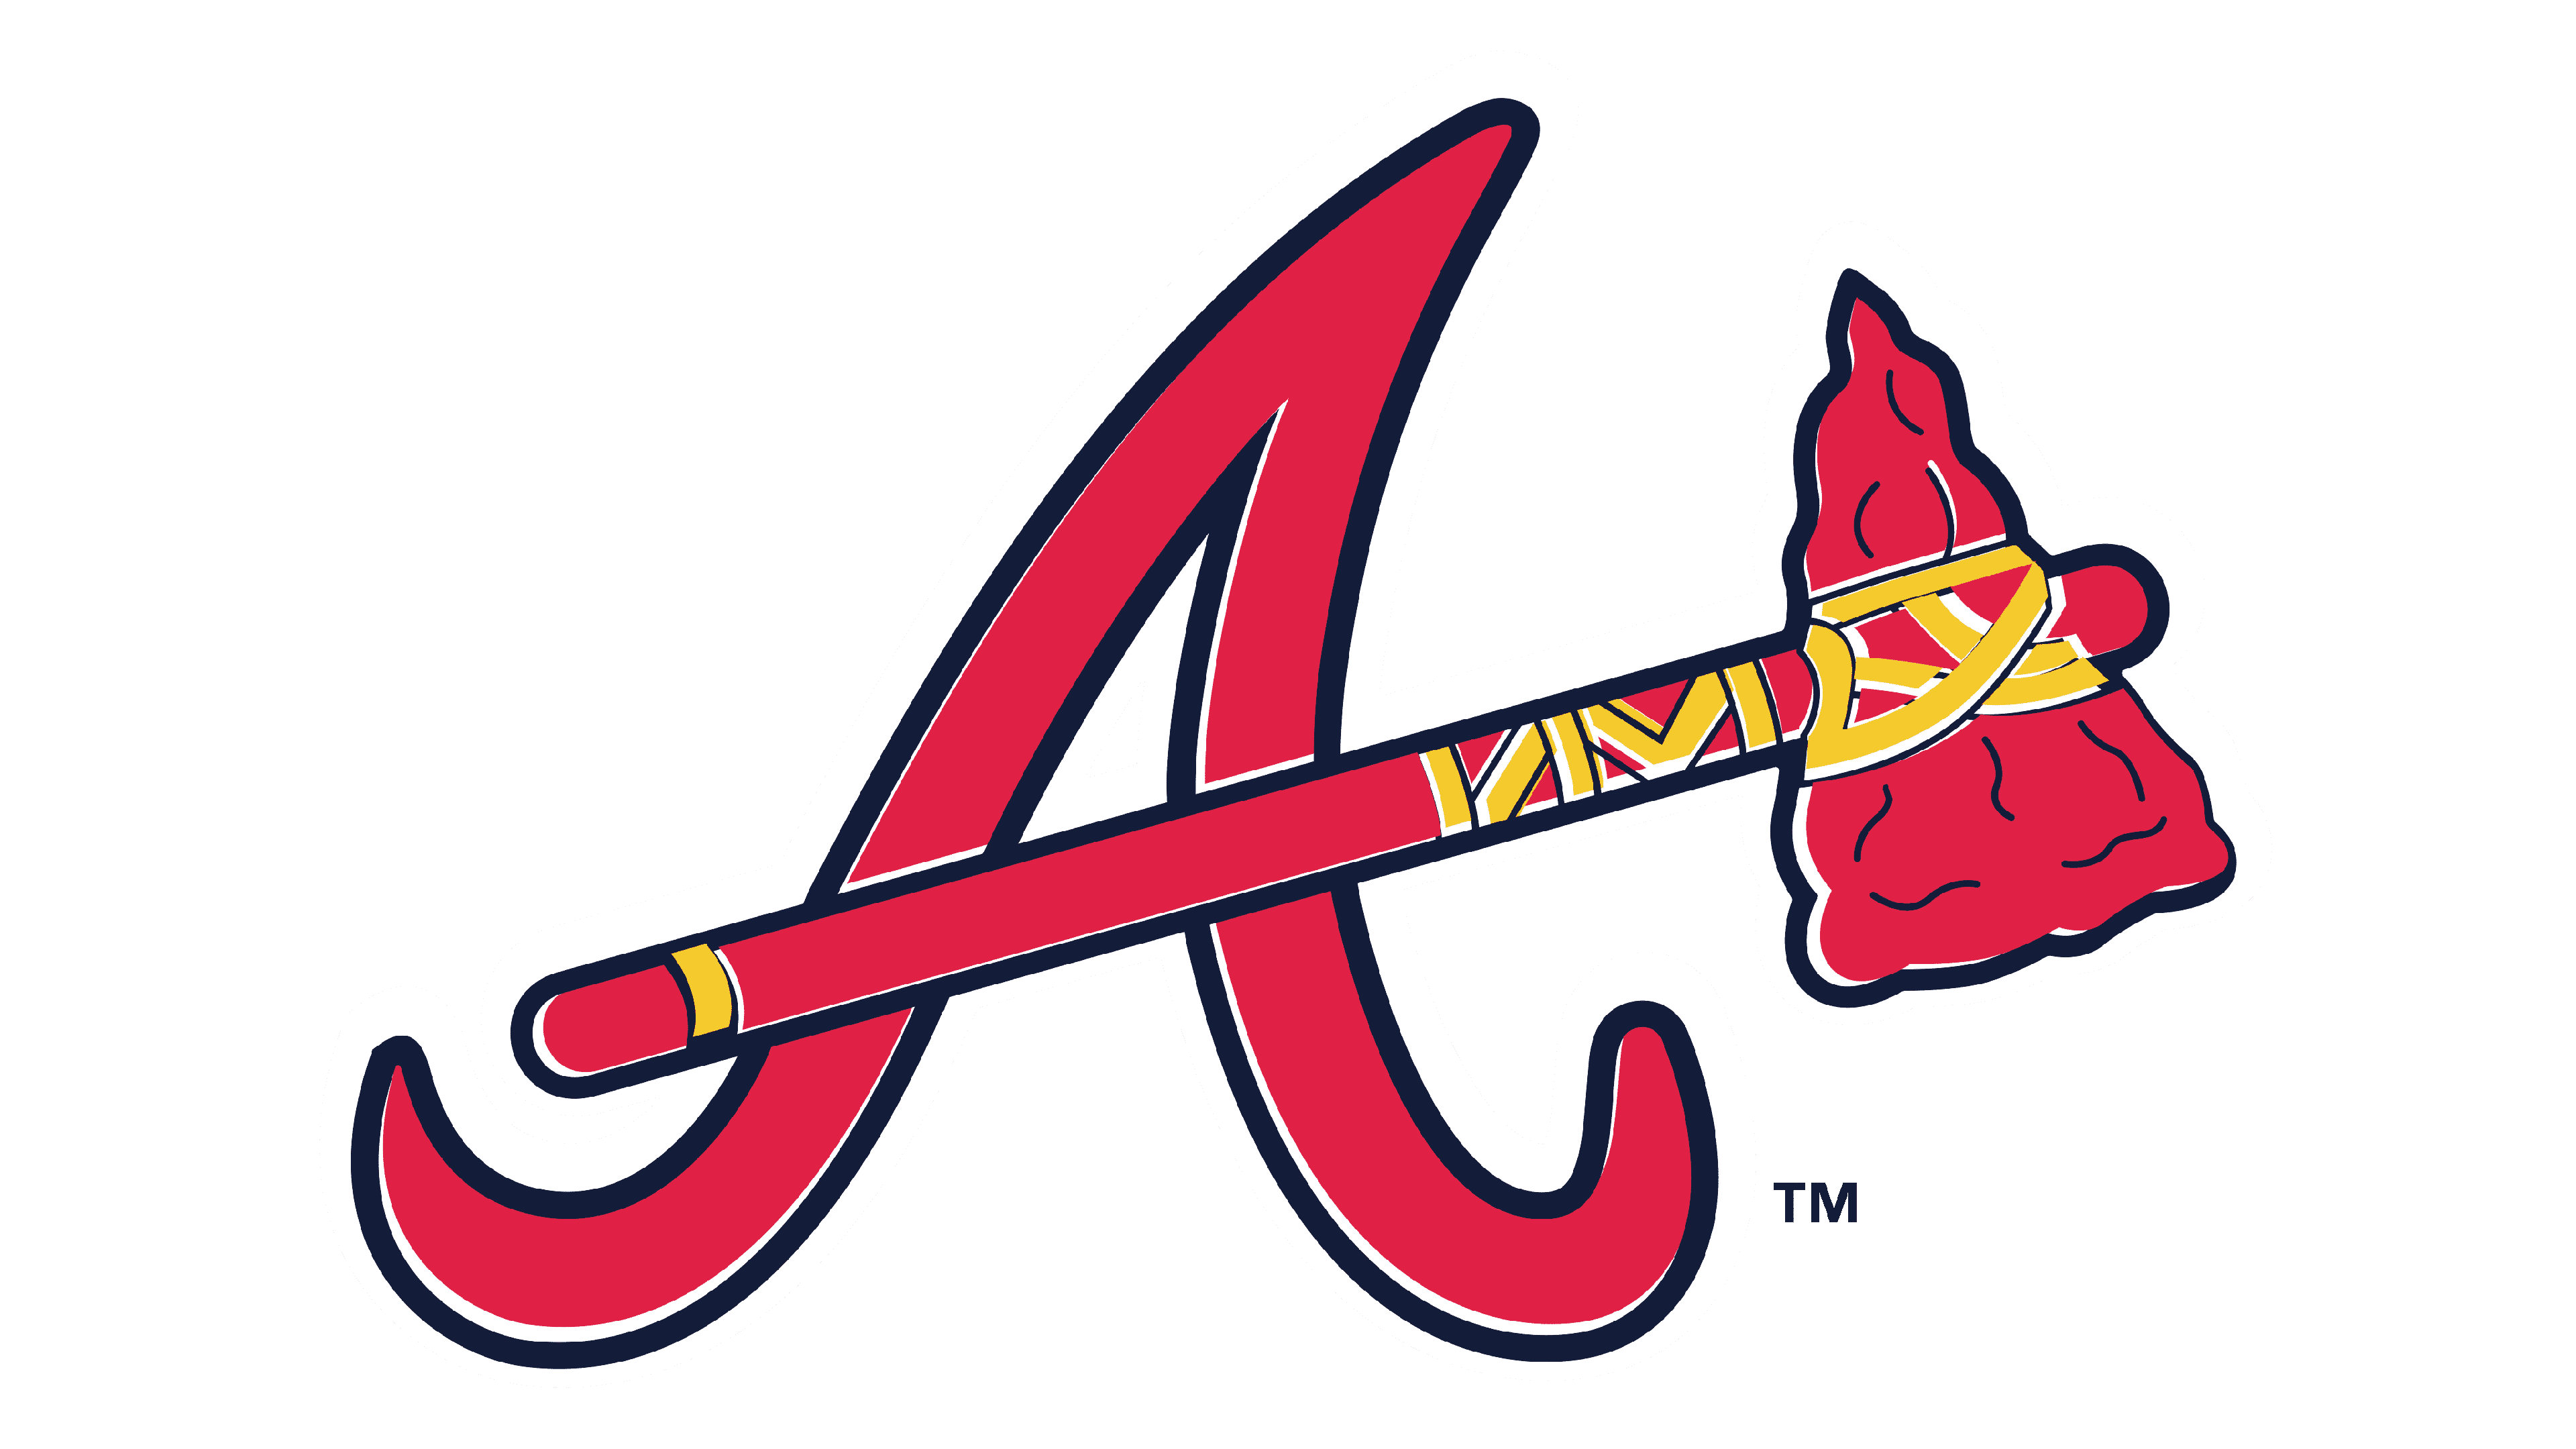 Atlanta Braves Logohistory Logo Image for Free - Free Logo Image